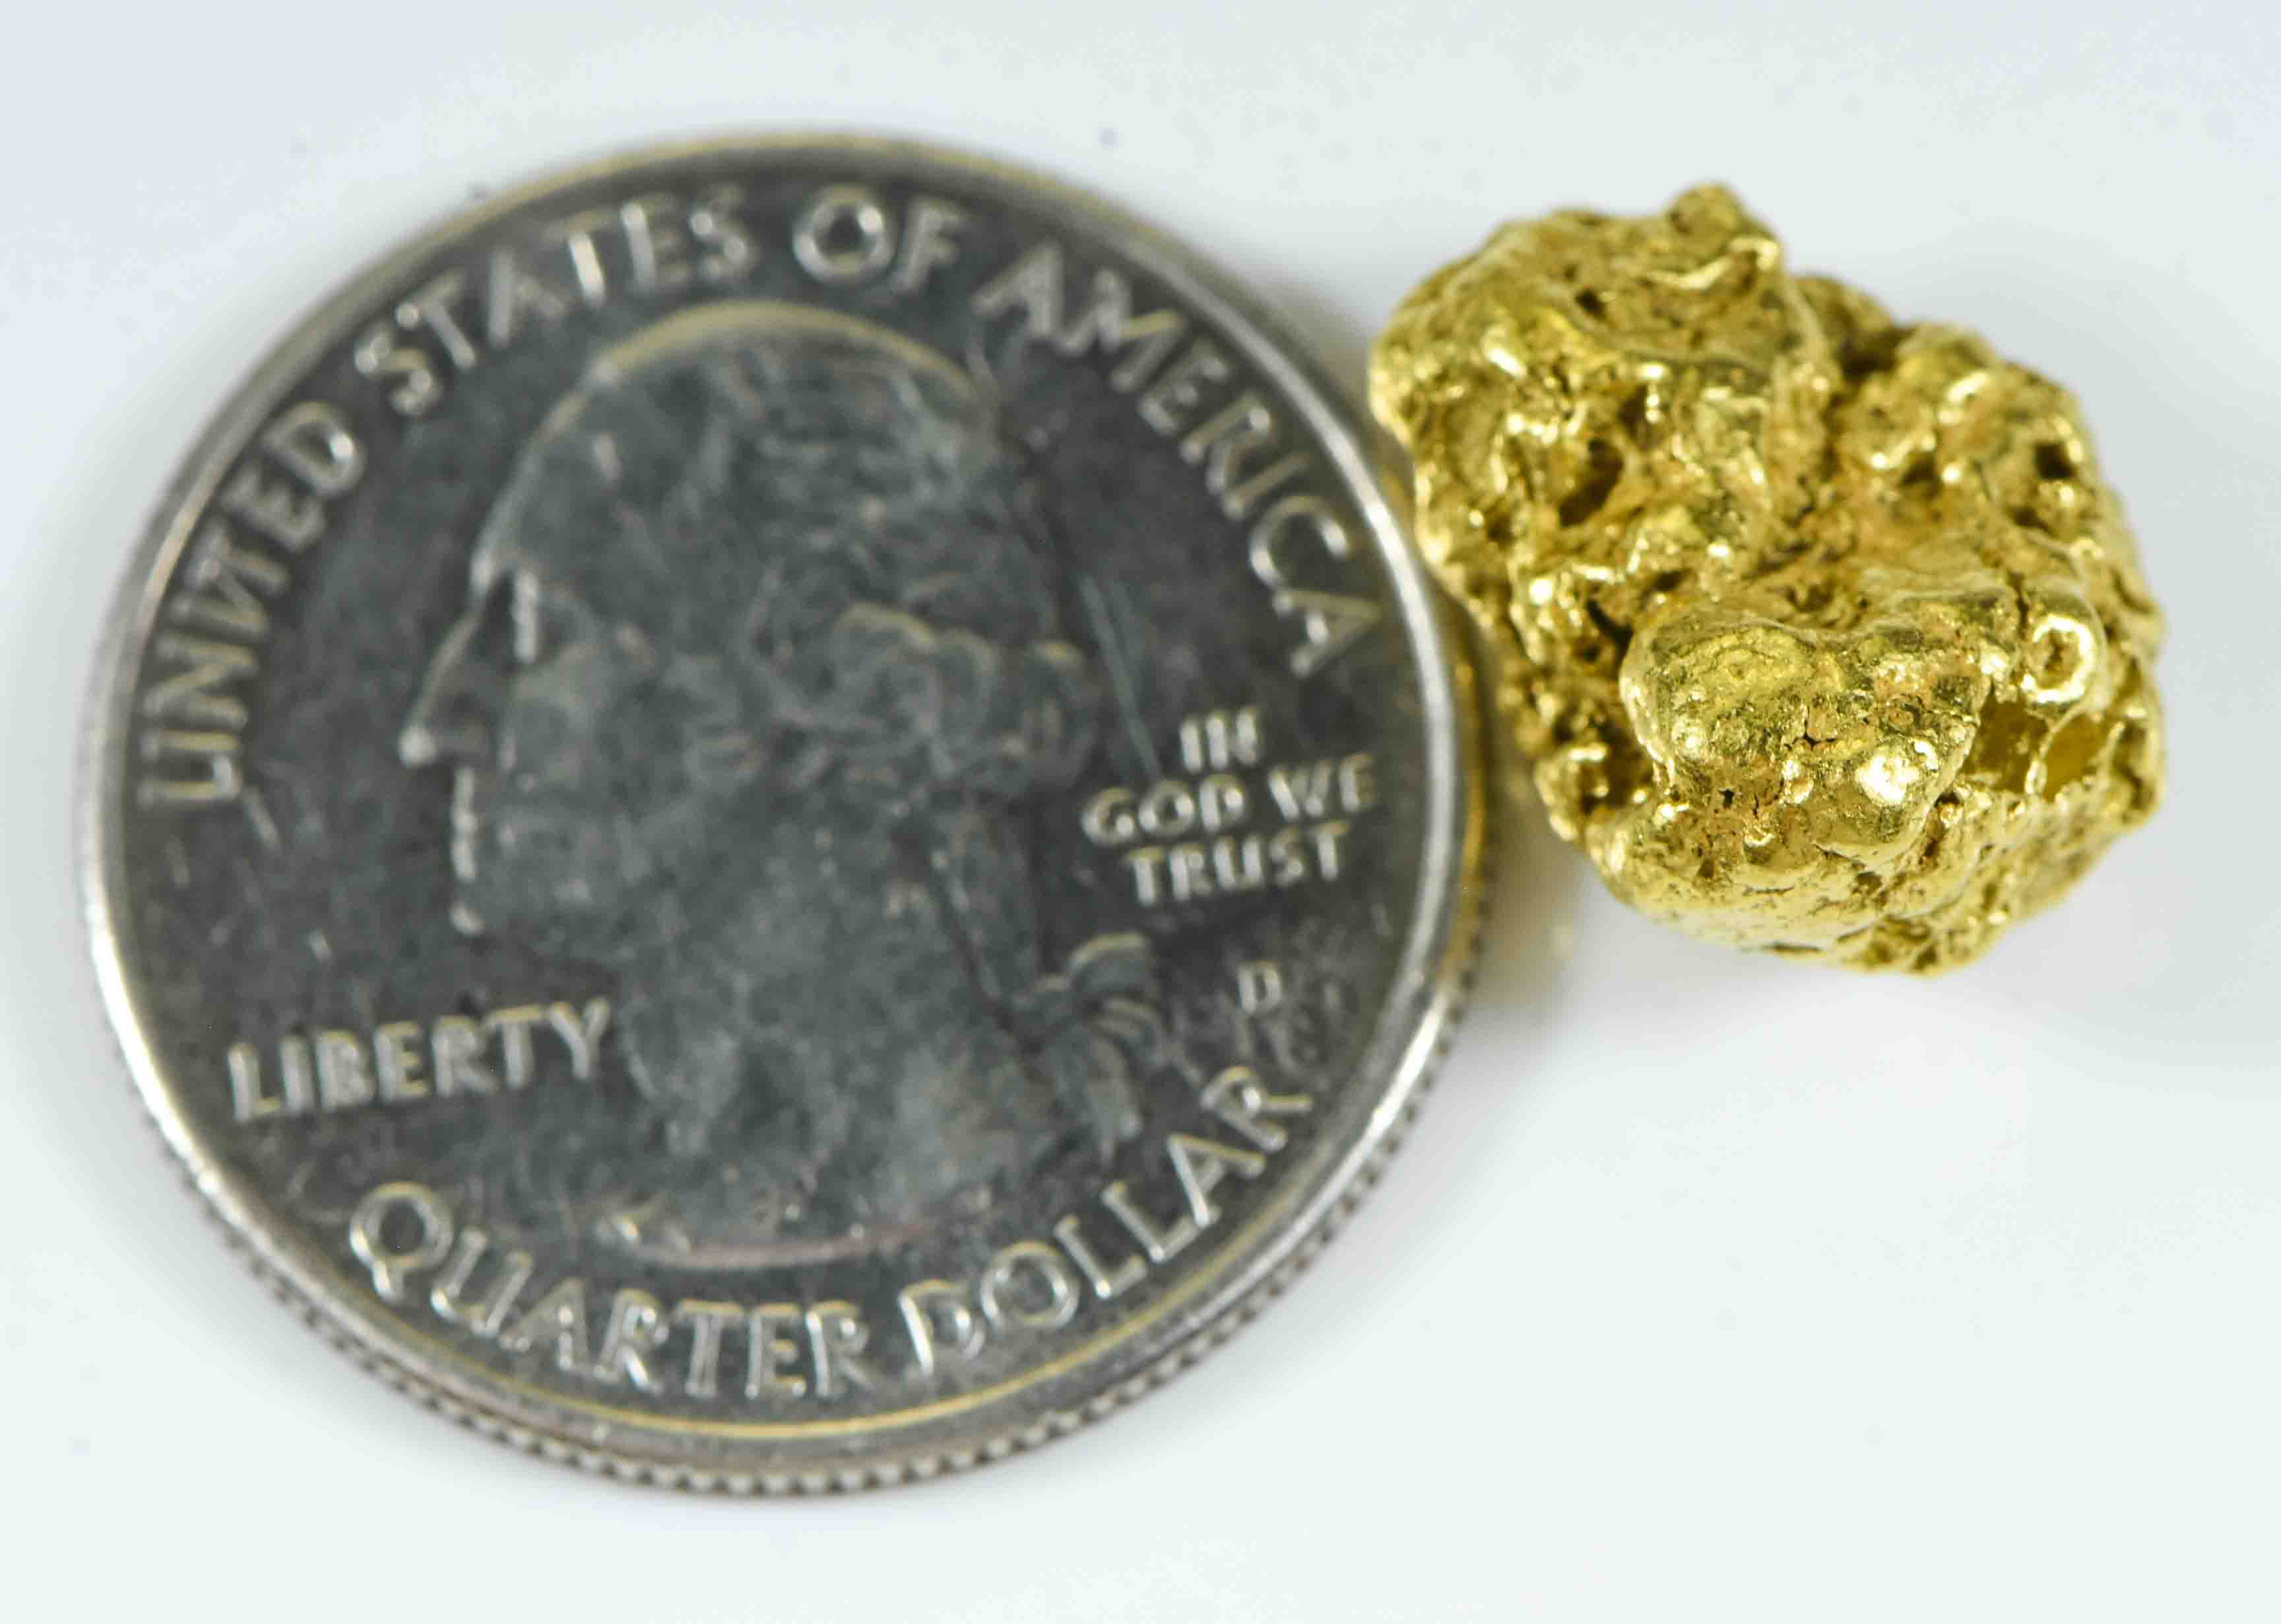 #467 Alaskan BC Natural Gold Nugget 7.22 Grams Genuine